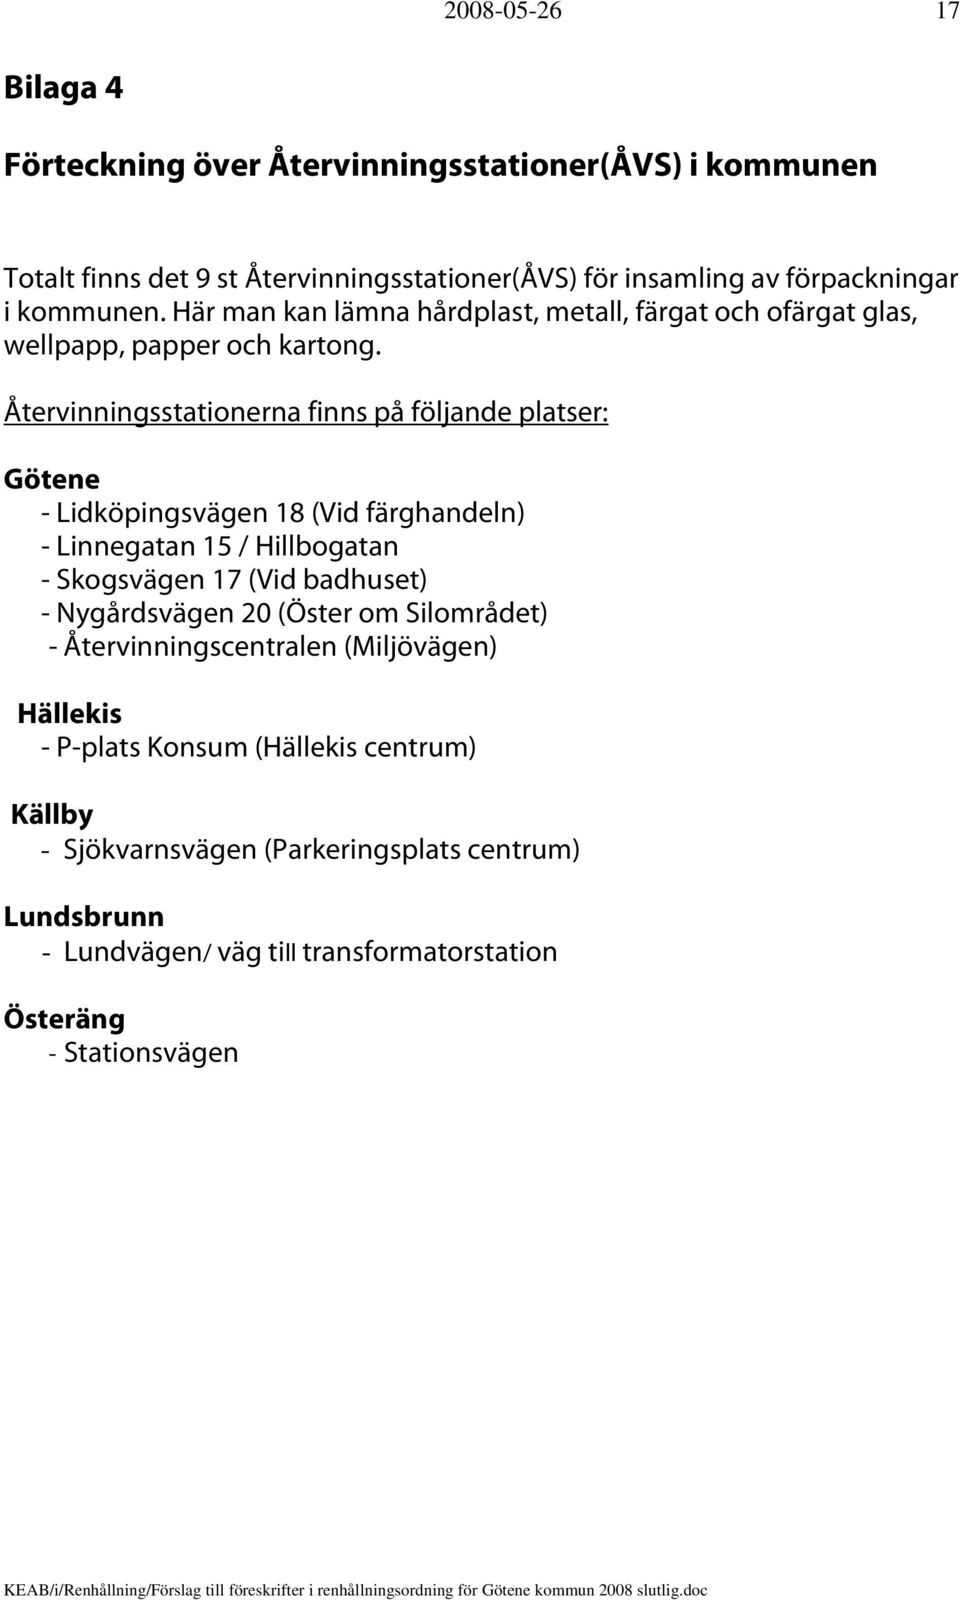 Återvinningsstationerna finns på följande platser: Götene - Lidköpingsvägen 18 (Vid färghandeln) - Linnegatan 15 / Hillbogatan - Skogsvägen 17 (Vid badhuset) -